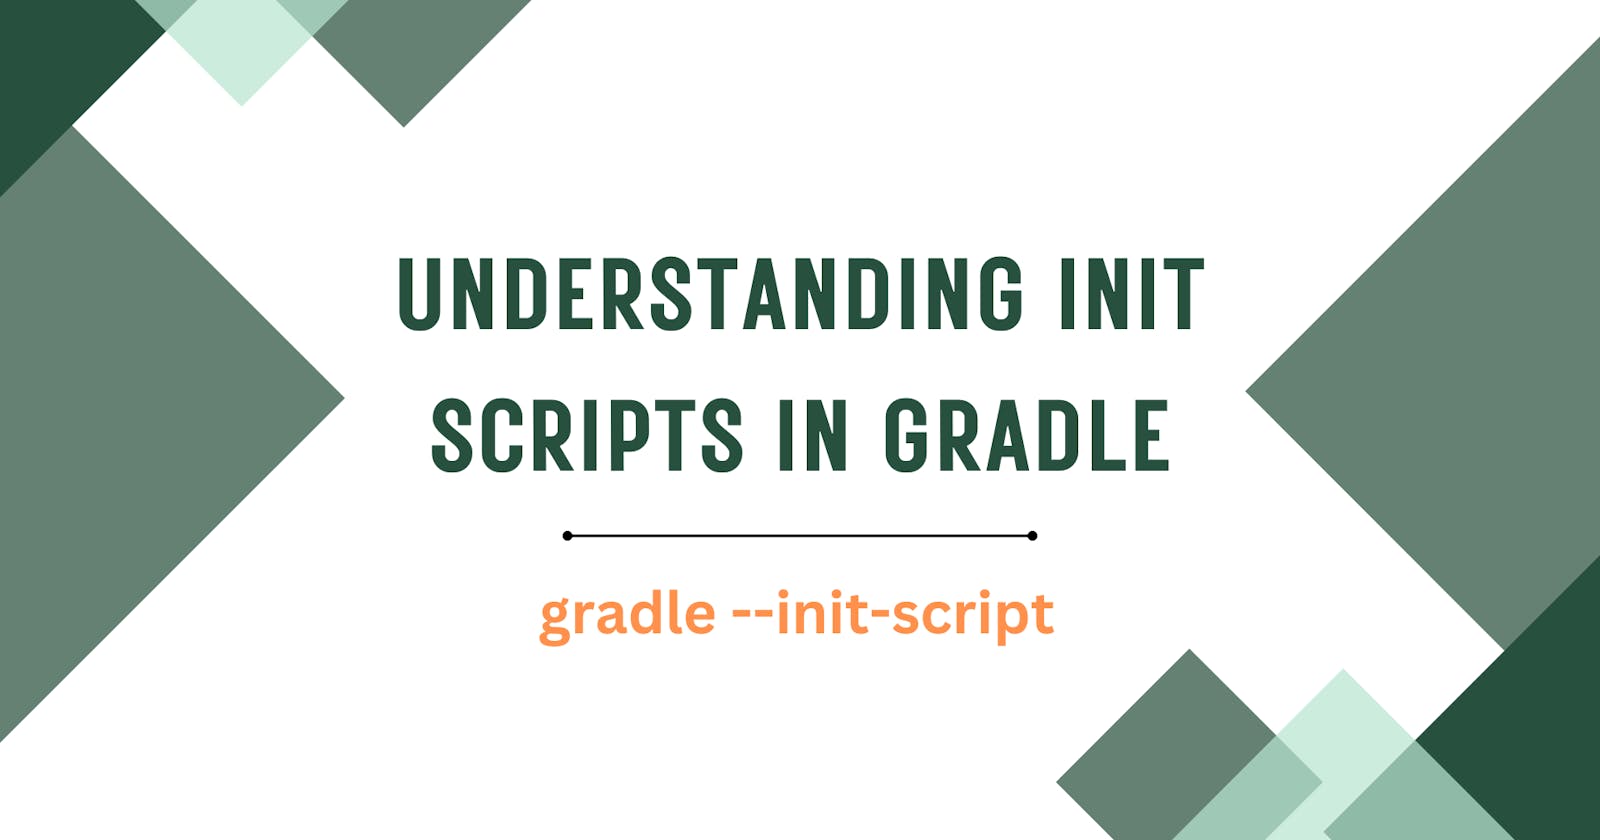 Understanding Init Scripts in Gradle